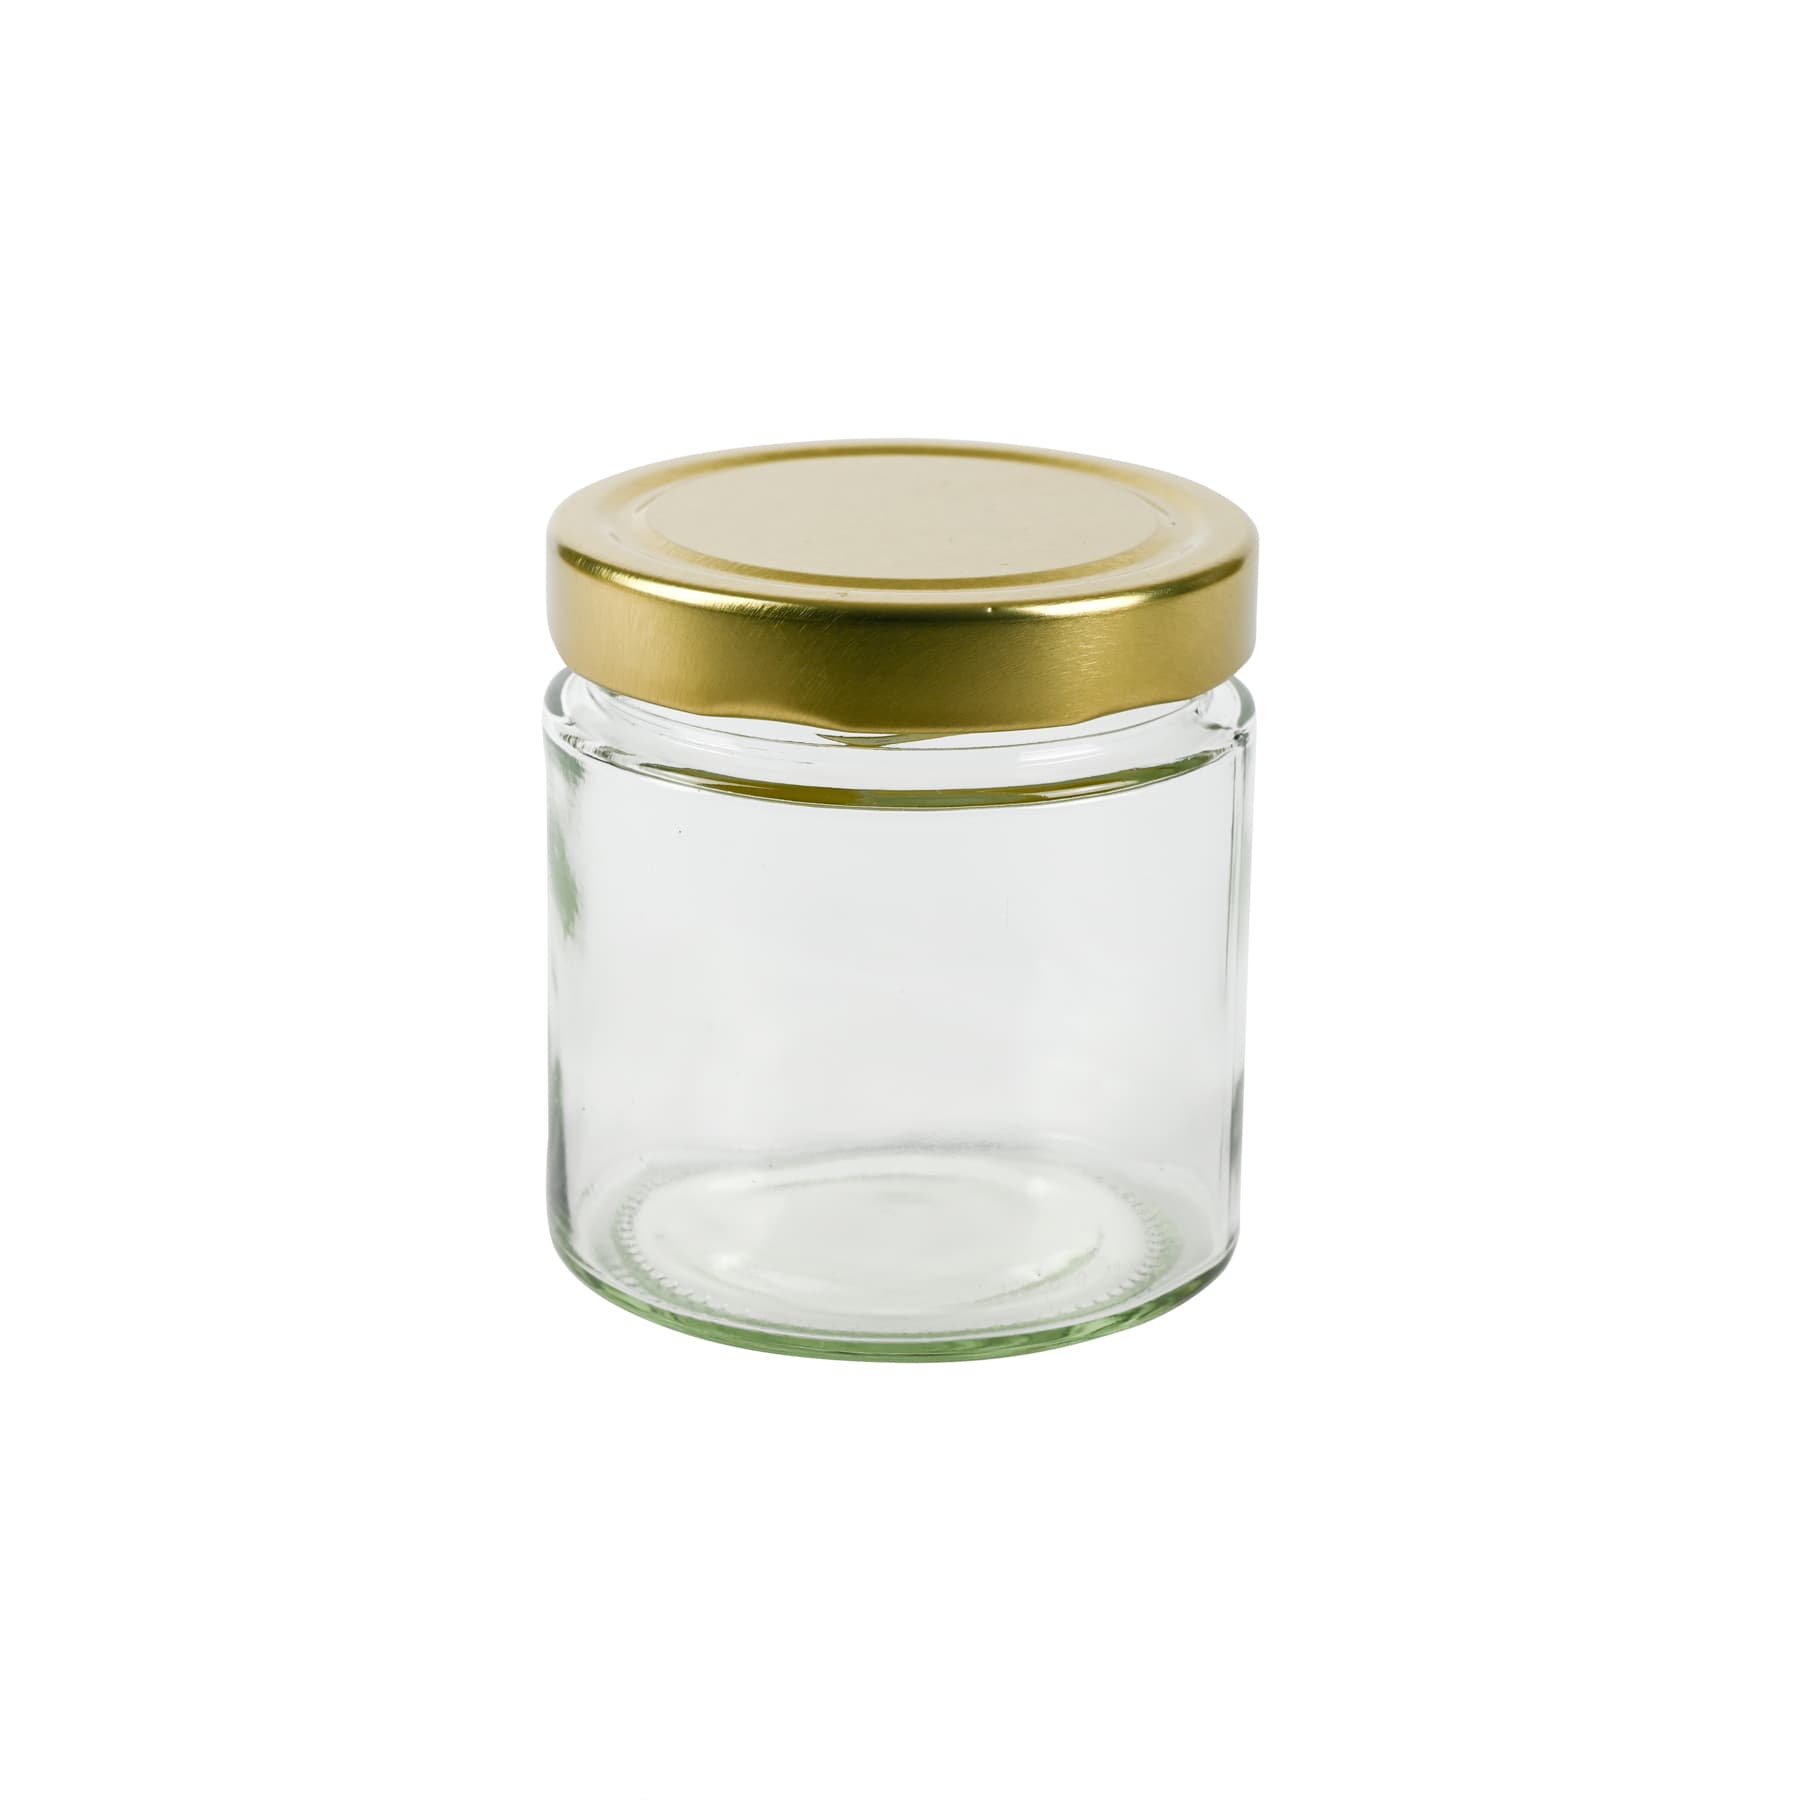 Rundglas 500 g (410 ml), mit T0 DEEP  Deckel gold 82 mm zu 13 St. je Karton gepackt diesen Artikel bieten wir nur zur Selbstabholung an,